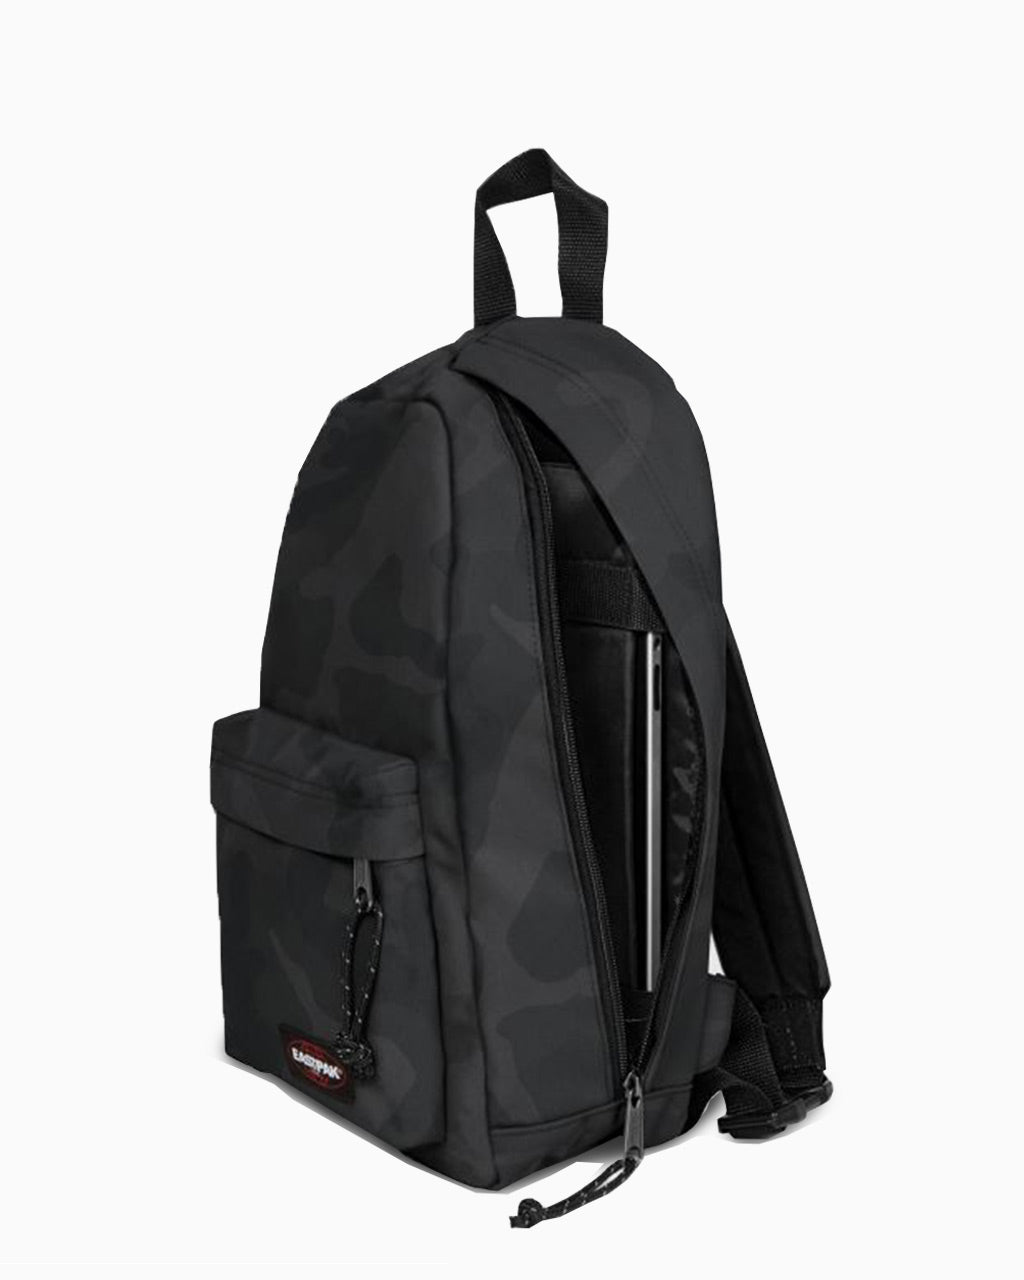 Eastpak Litt Backpack